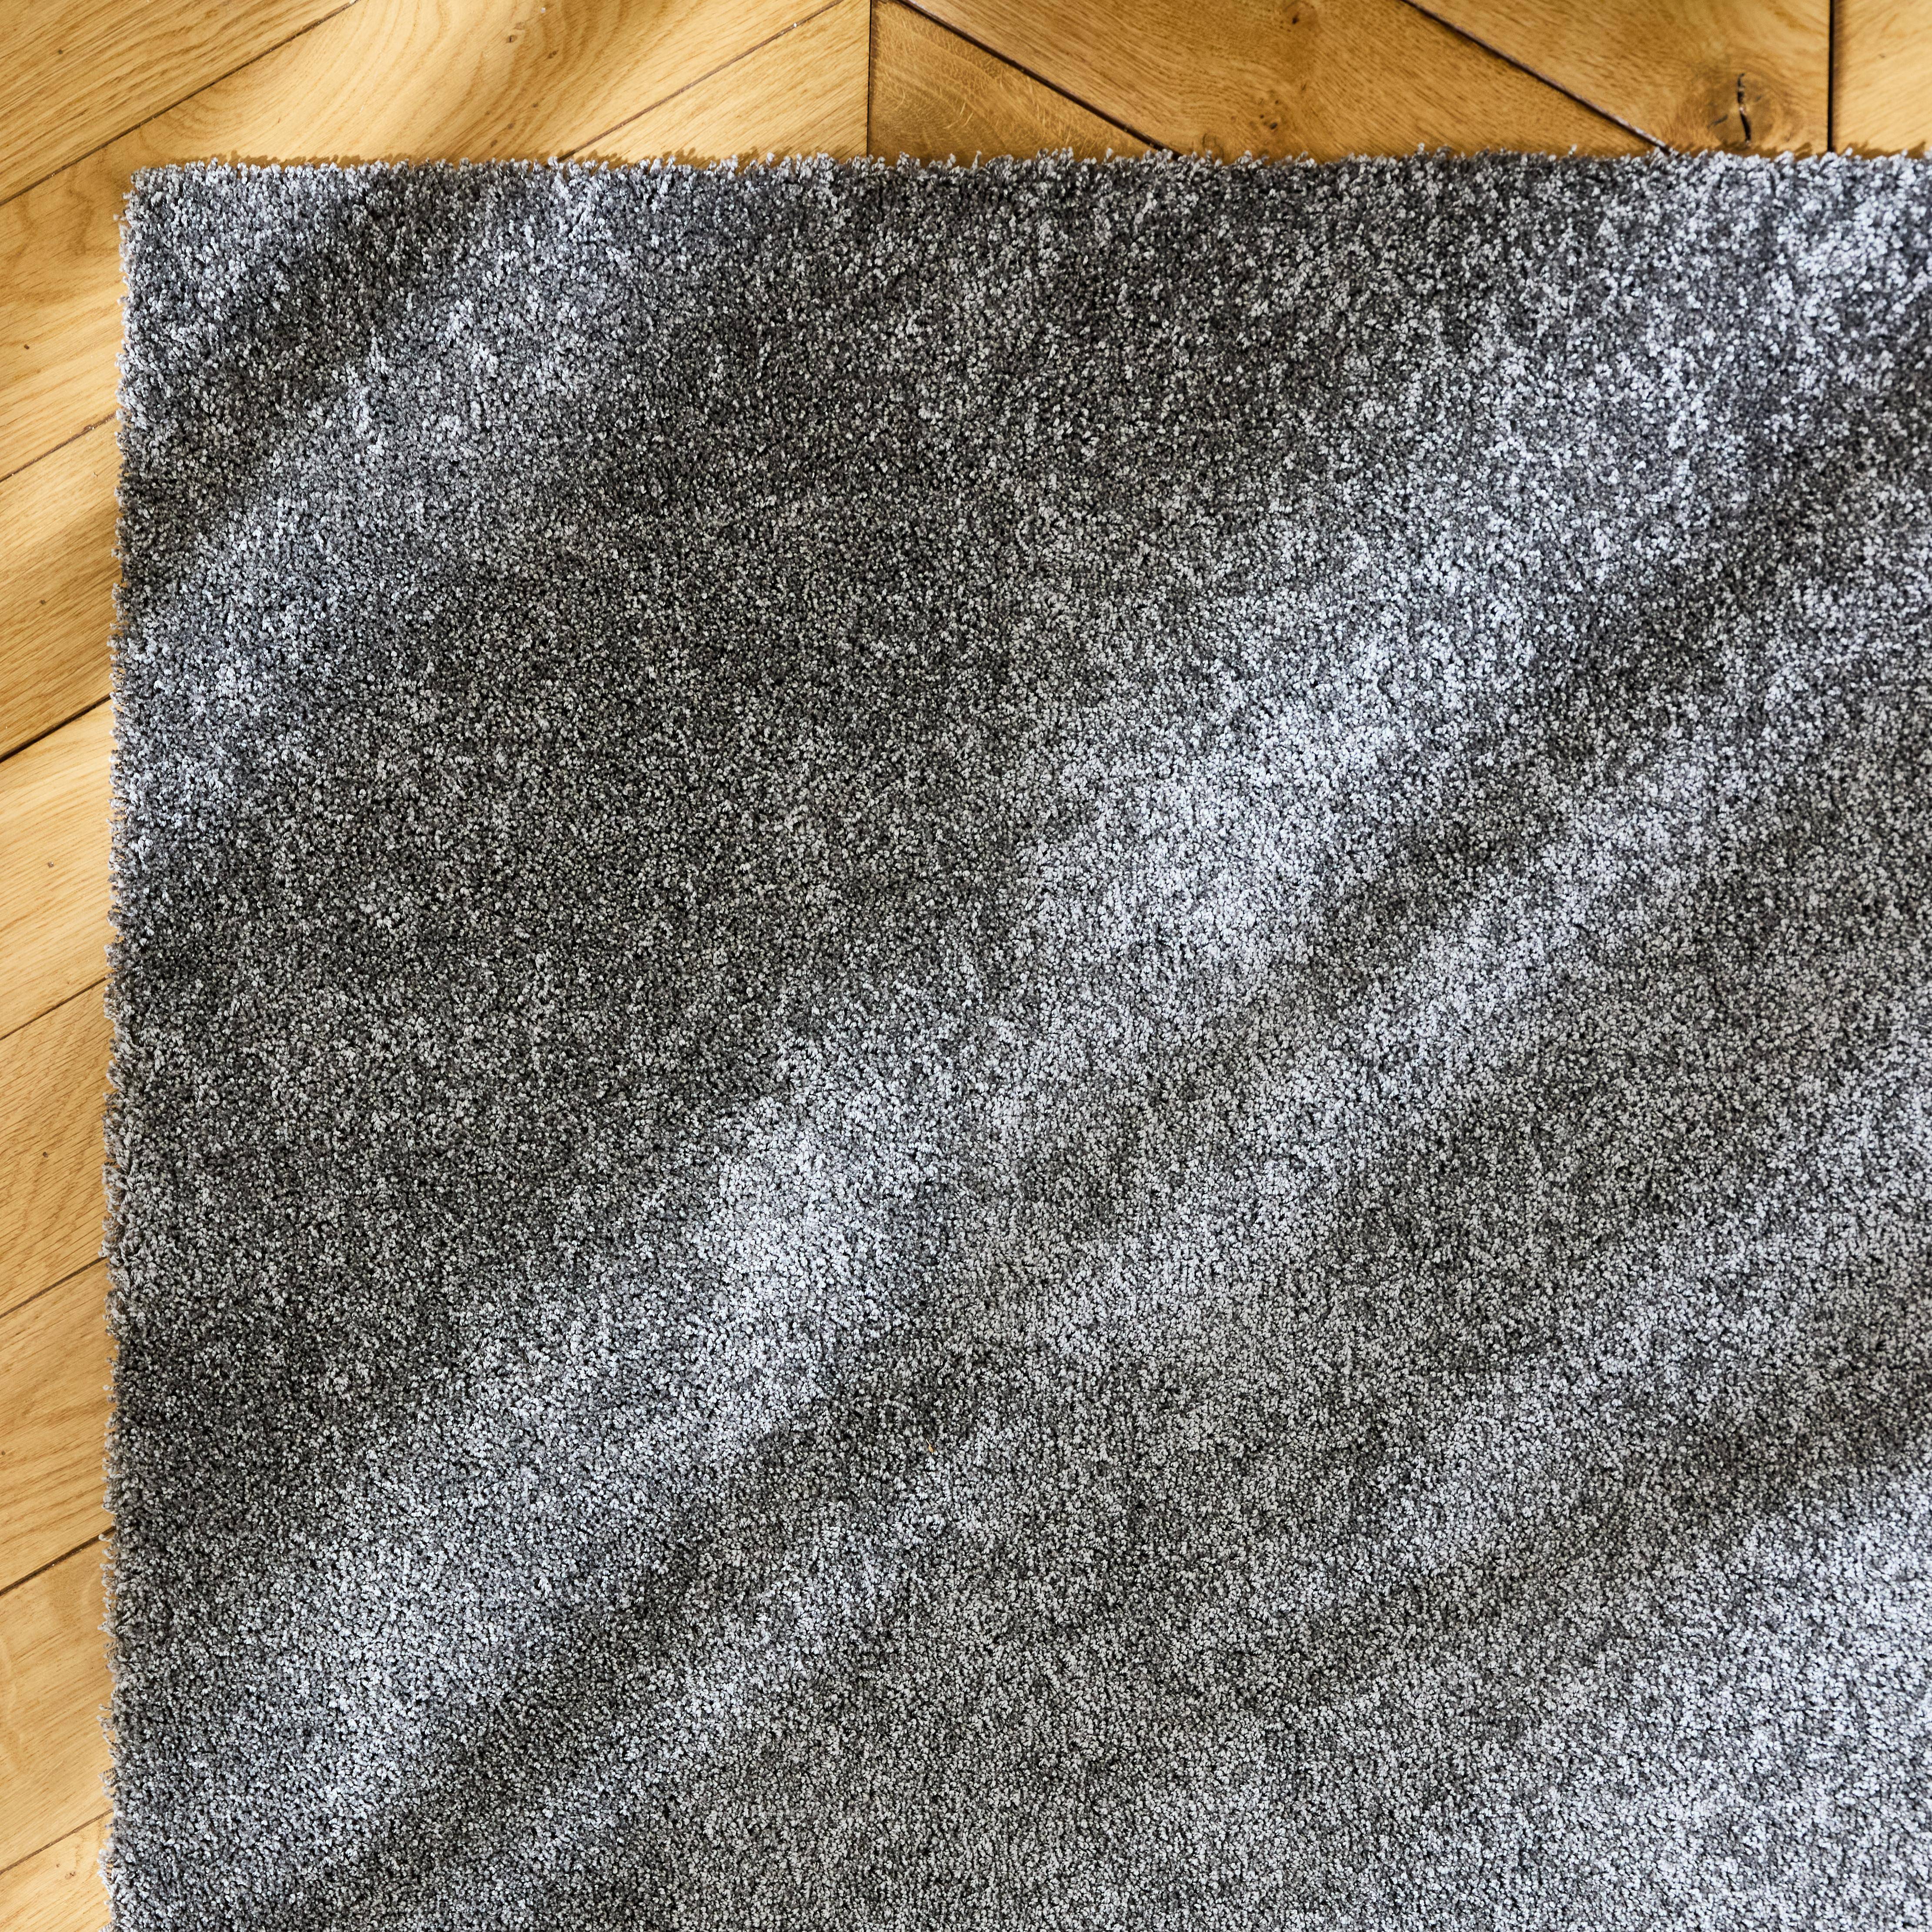 Tappeto per interni in velluto riccio grigio antracite, 80x150cm, a pelo corto con effetto pelo ad anello,sweeek,Photo3